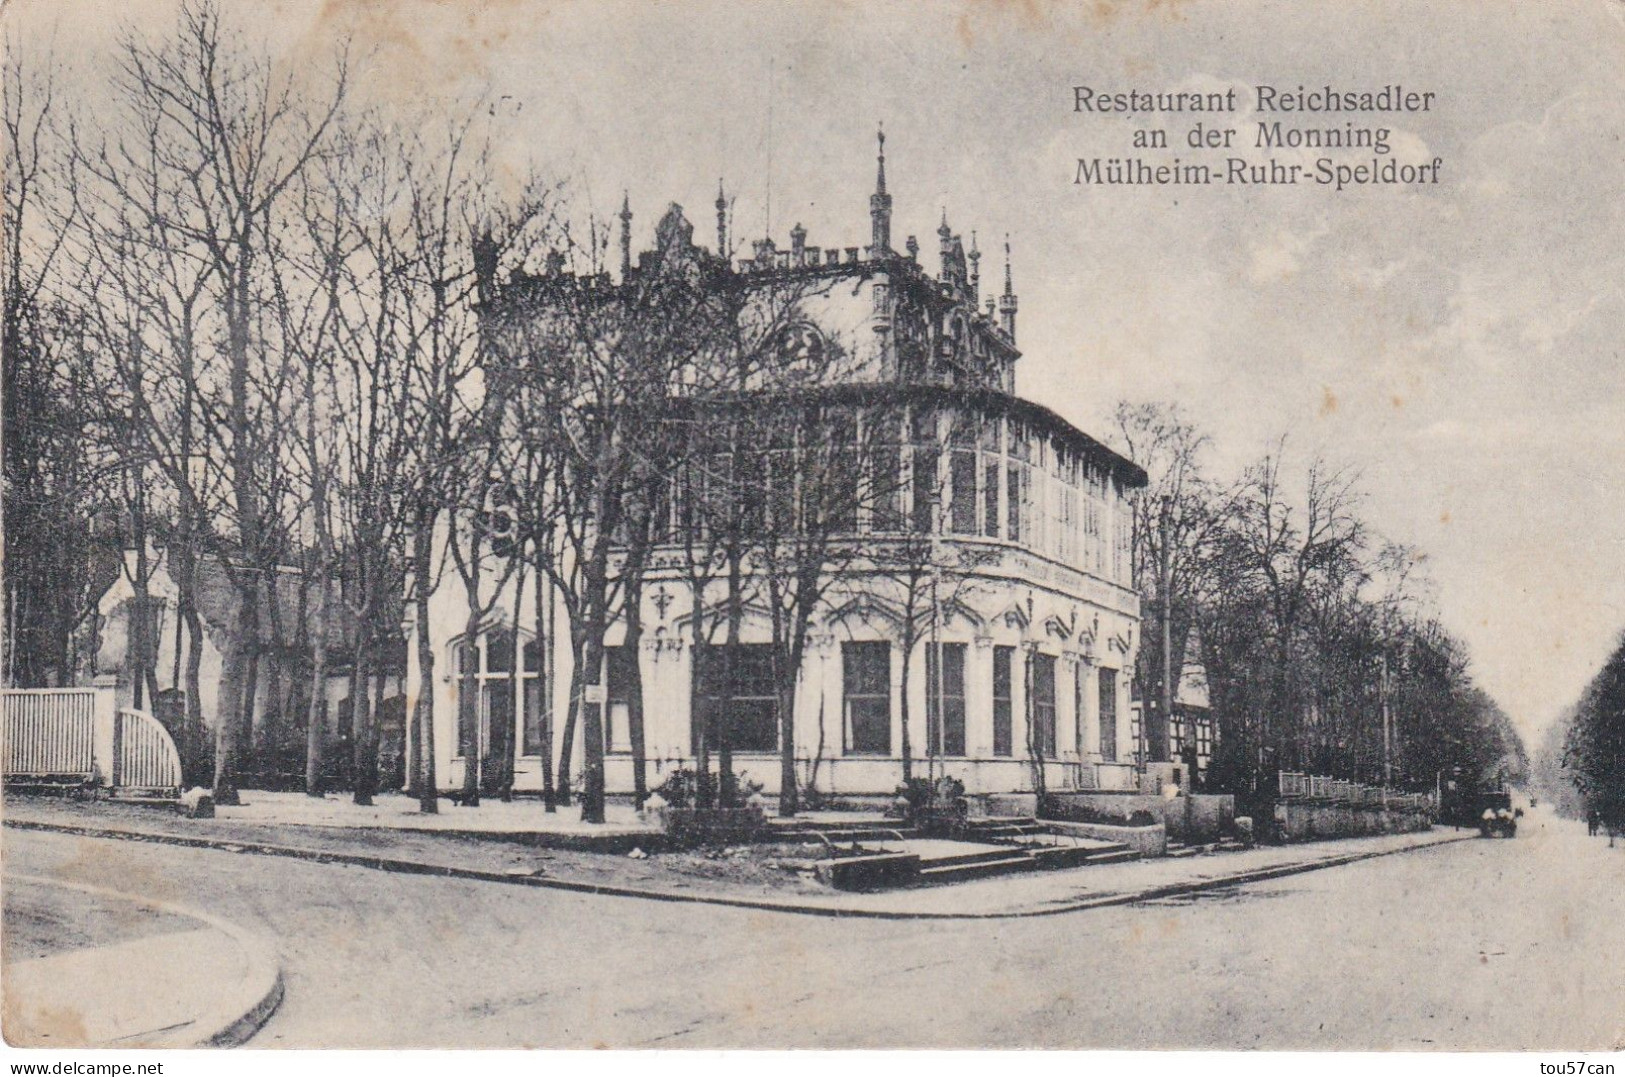 MÜLHEIM - RUHR - SPELDORF - RHEINLAND-WESTFALLEN  -  DEUTSCHLAND - ANSICHTKARTE 1921  -  RESTAURANT  REICHSADLER. - Muelheim A. D. Ruhr